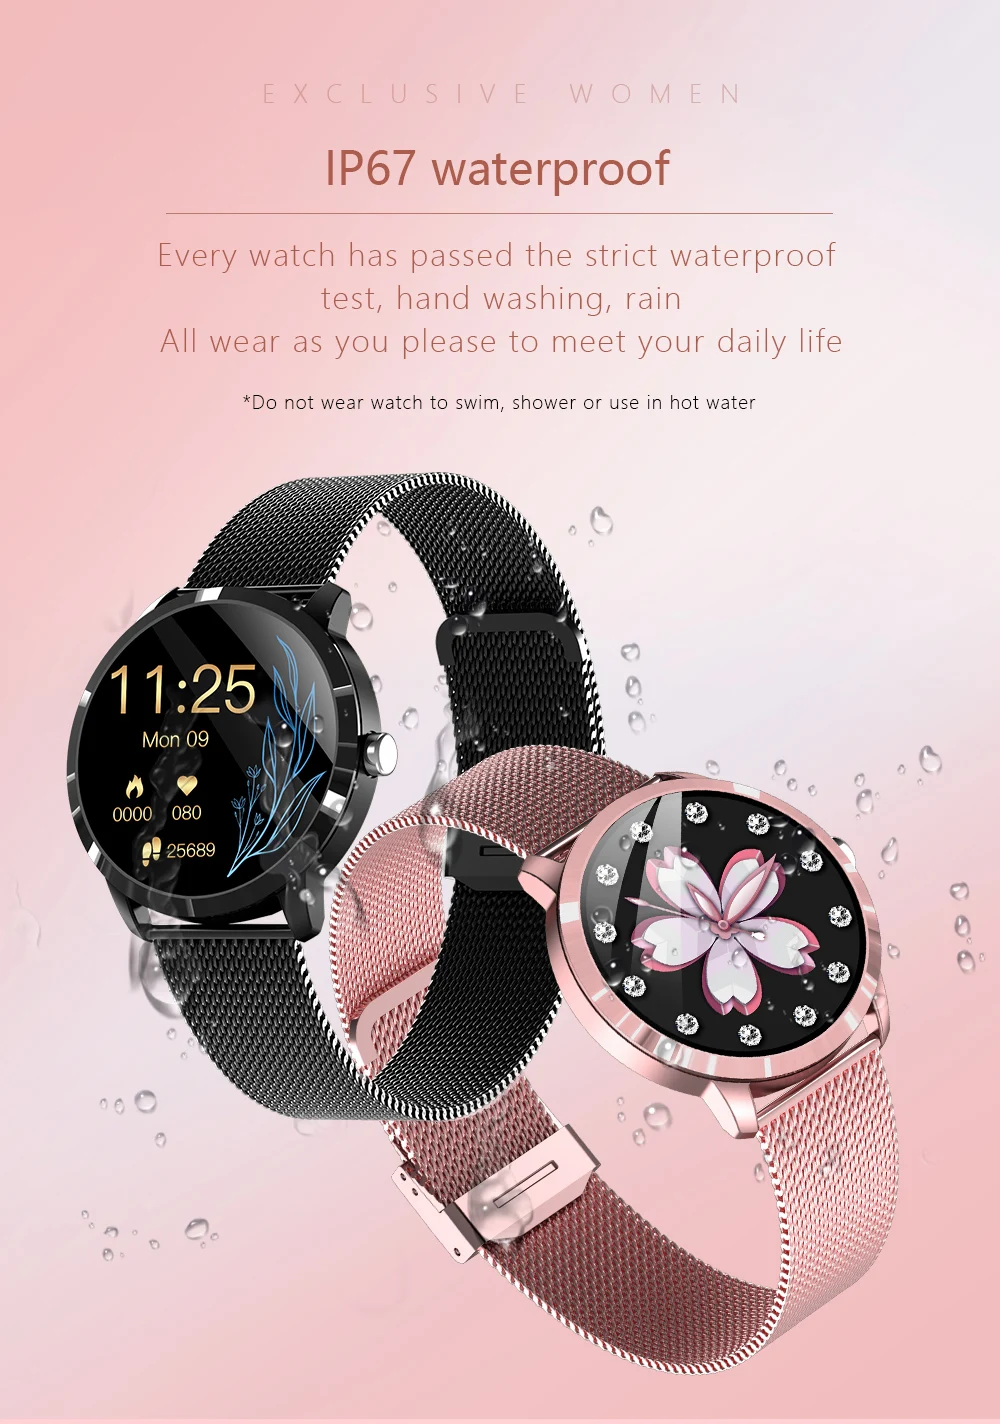 Gadgend smart watch women multi-sports fitness tracker smartwatch heart rate monitor blood pressure oxygen diy watch face bracelet